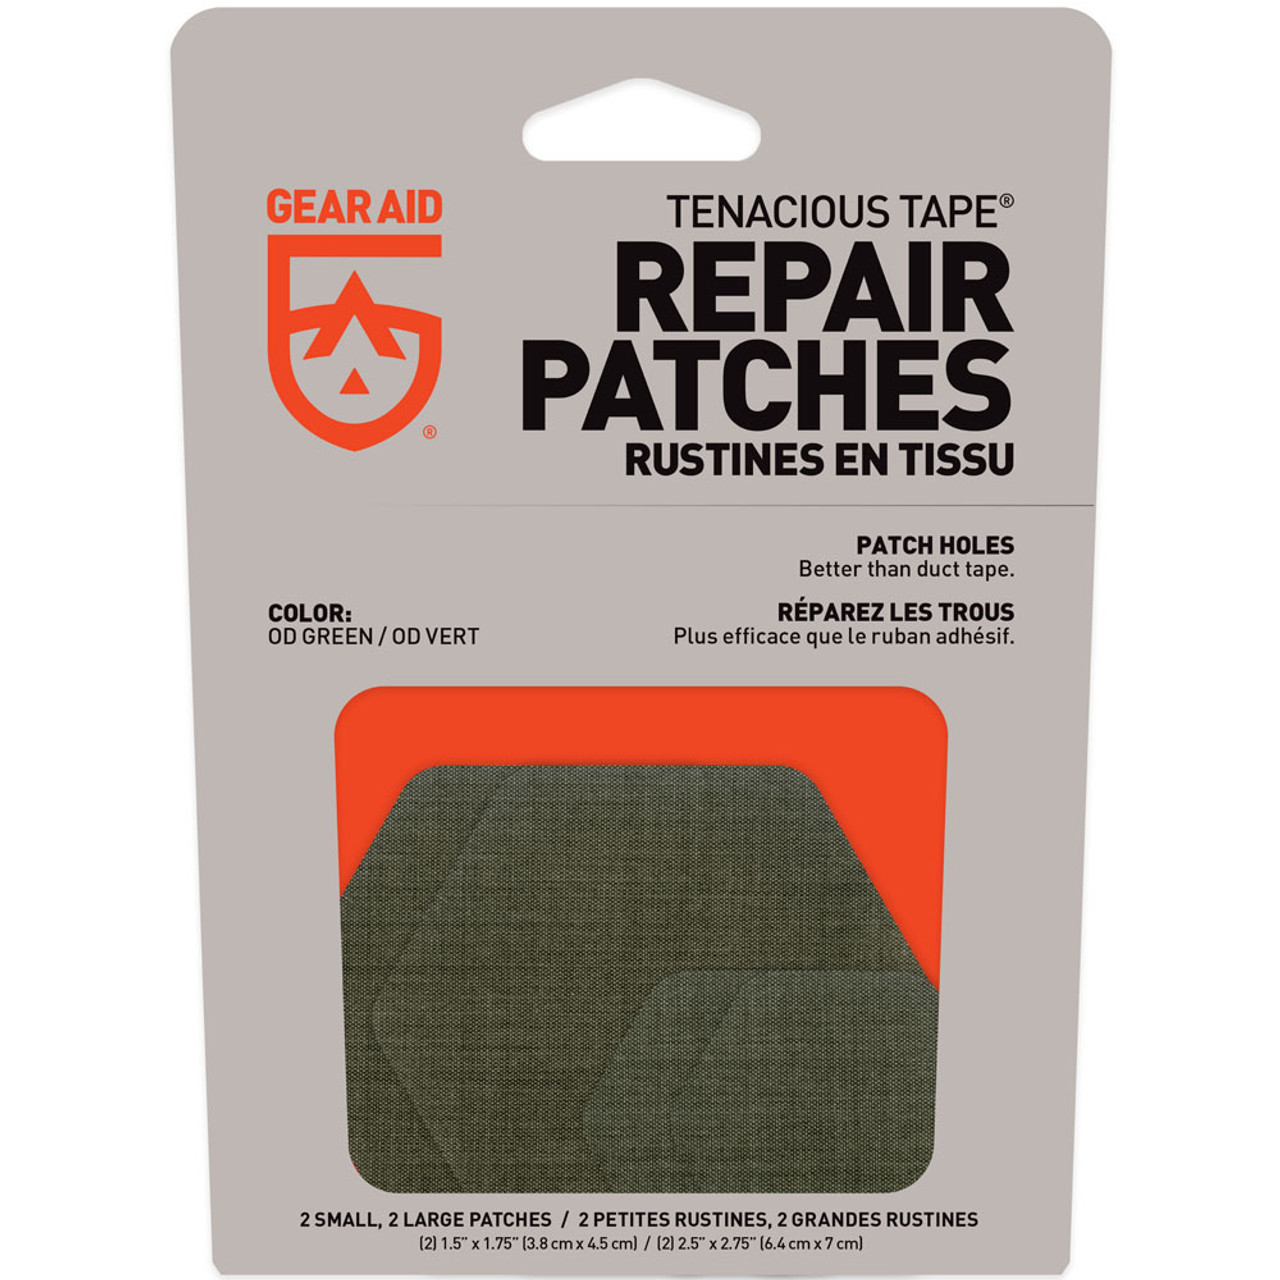 Tenacious Tape Repair Patches